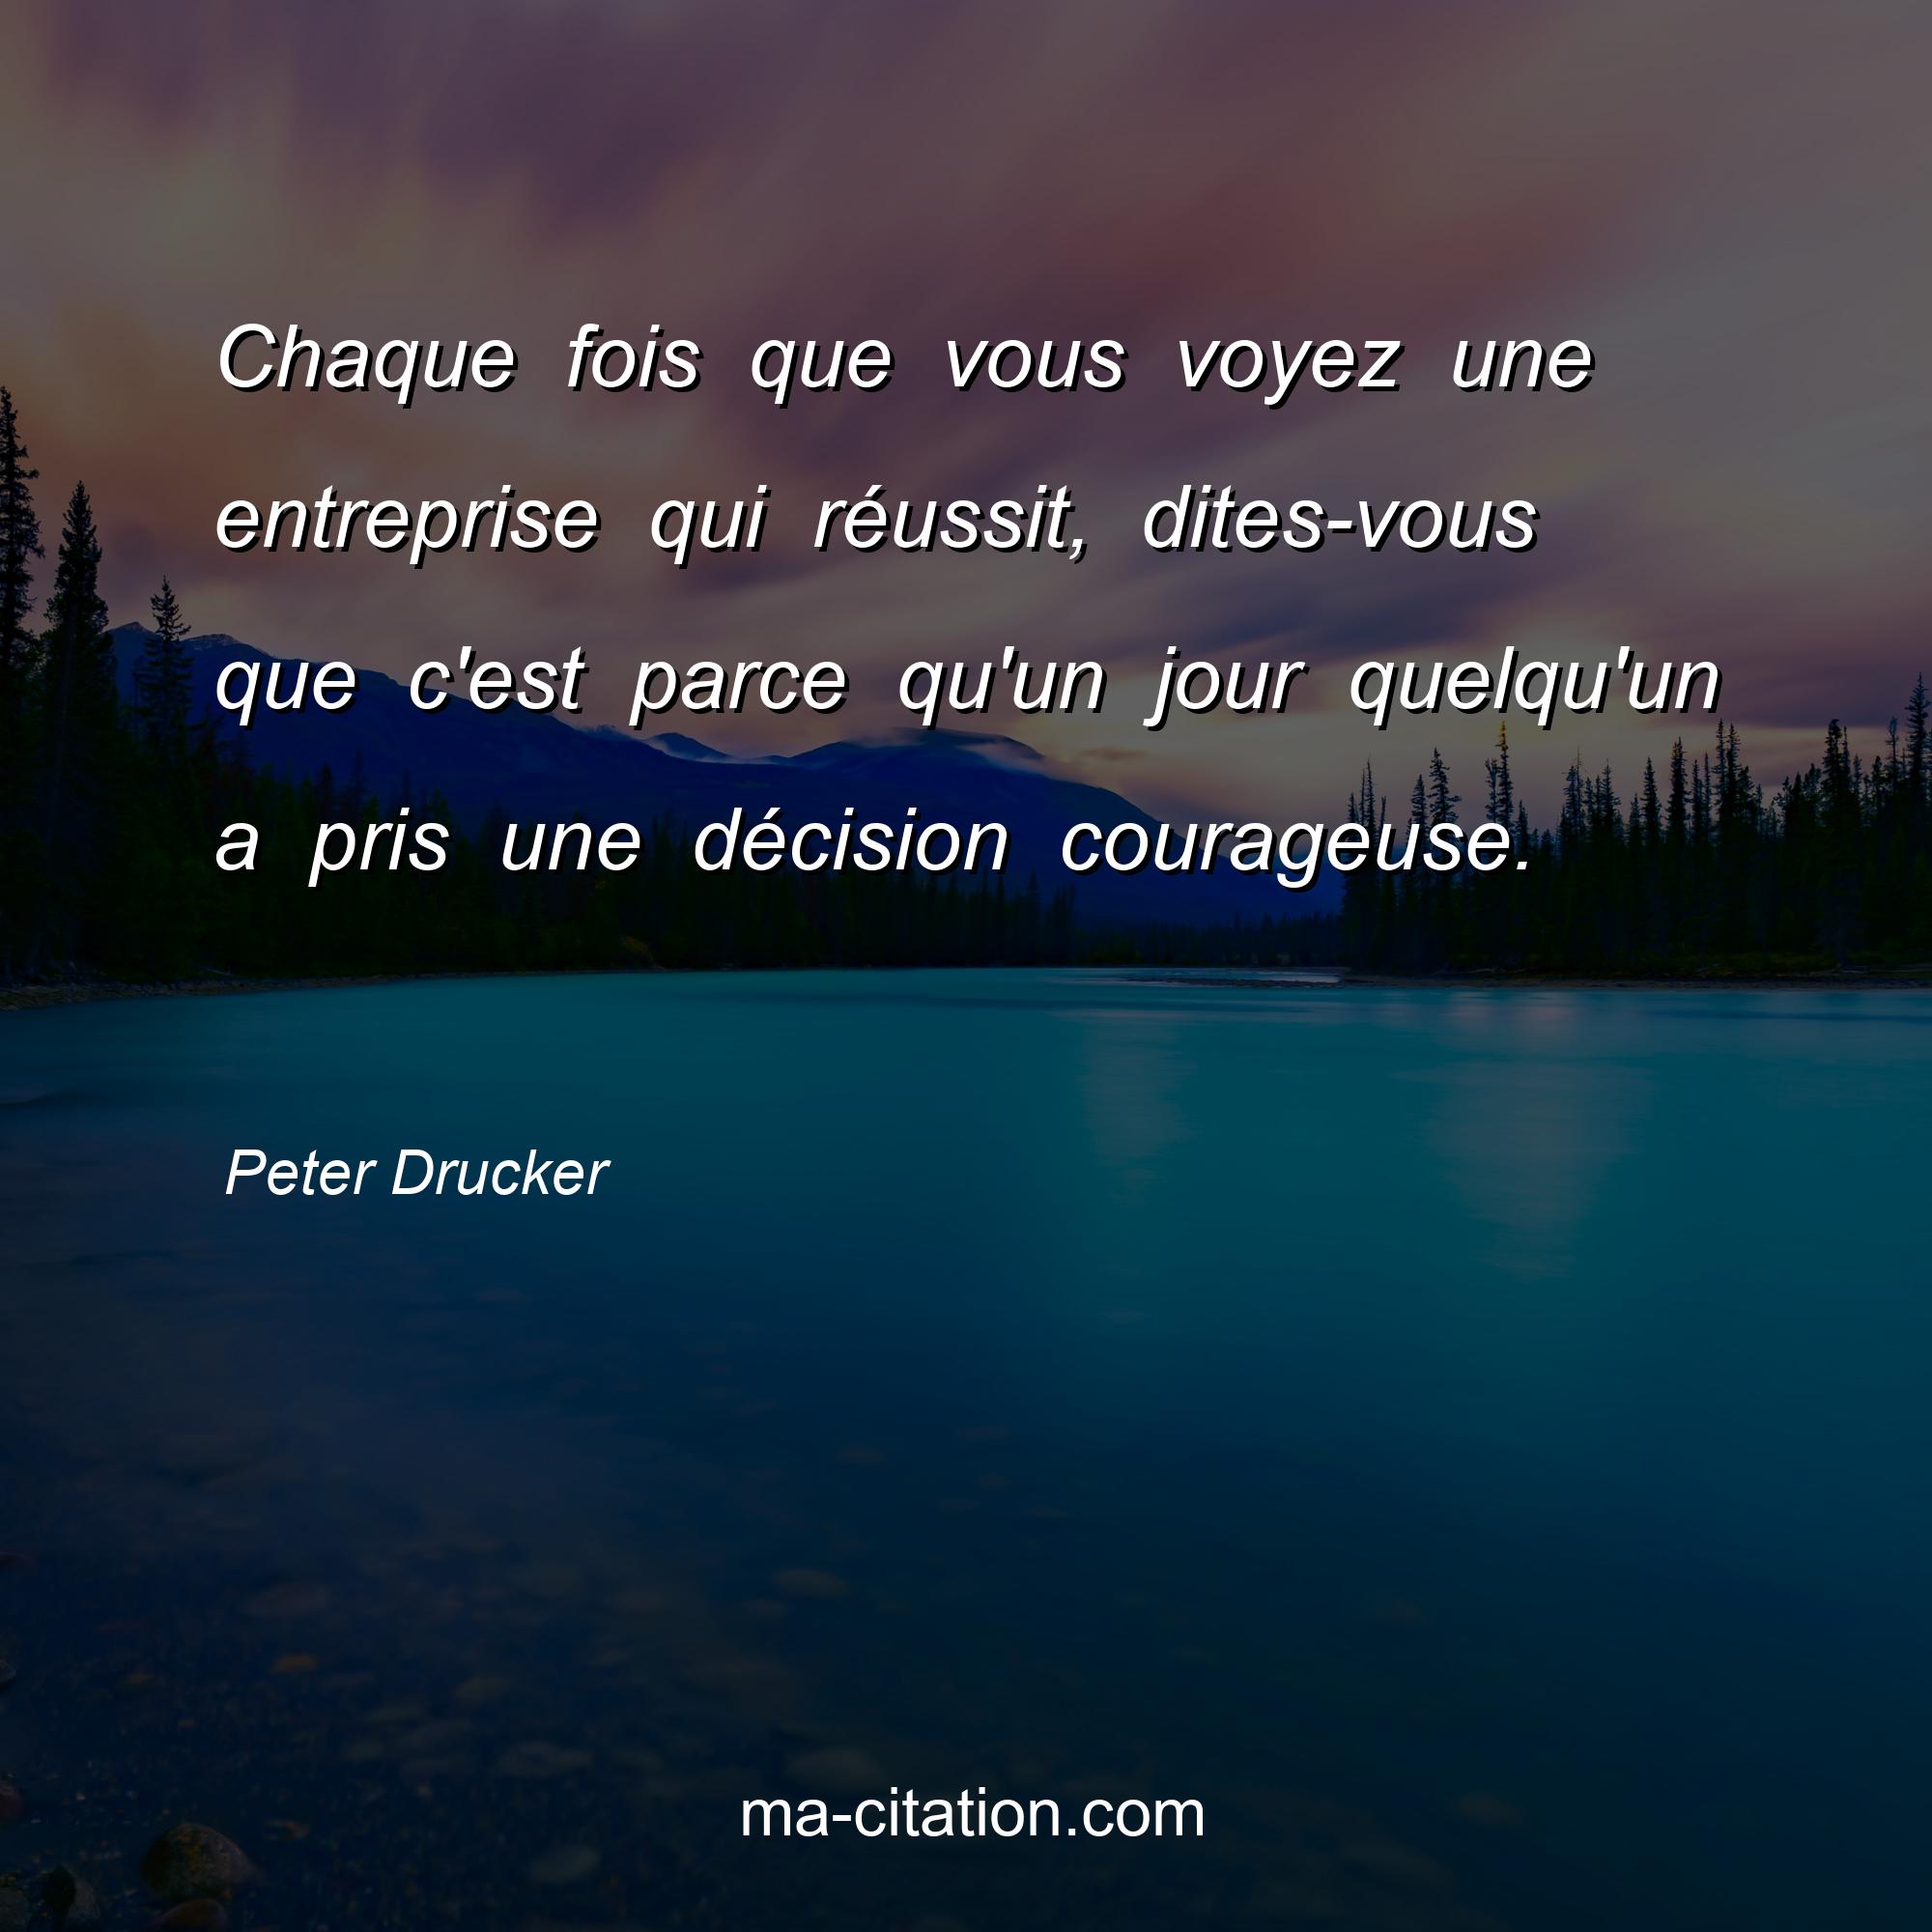 Peter Drucker : Chaque fois que vous voyez une entreprise qui réussit, dites-vous que c'est parce qu'un jour quelqu'un a pris une décision courageuse. 